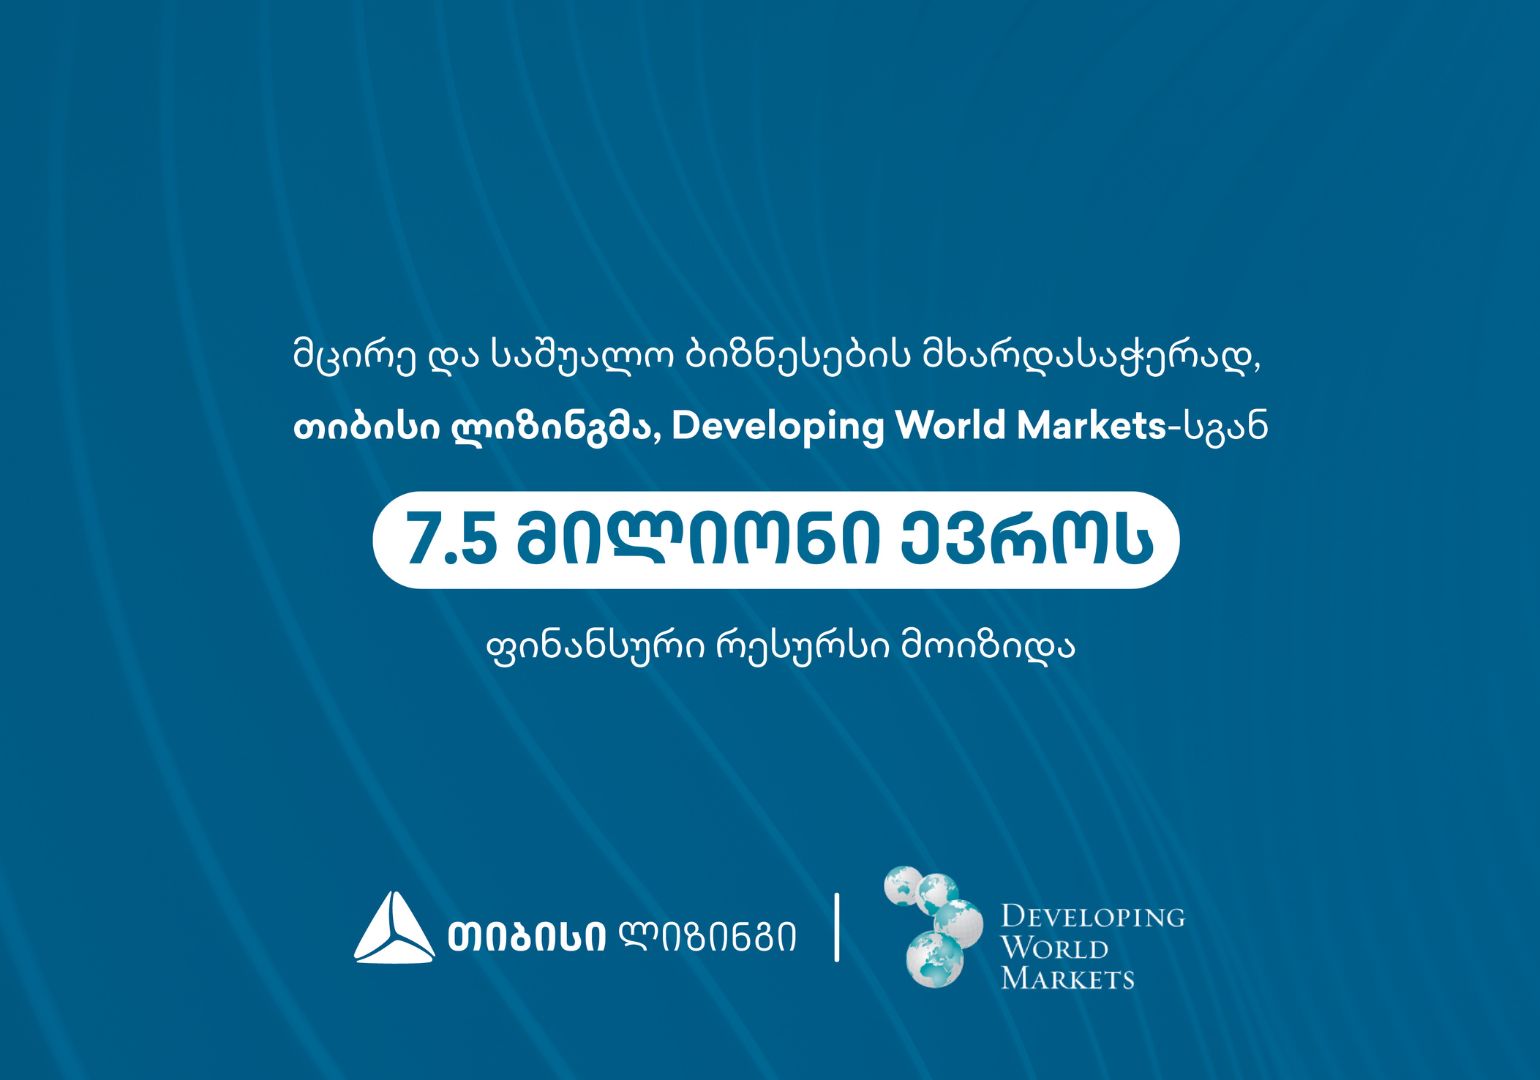 მცირე და საშუალო ბიზნესების მხარდასაჭერად თიბისი ლიზინგმა Developing World Markets-ისგან 7.5 მილიონი ევროს ფინანსური რესურსი მოიზიდა